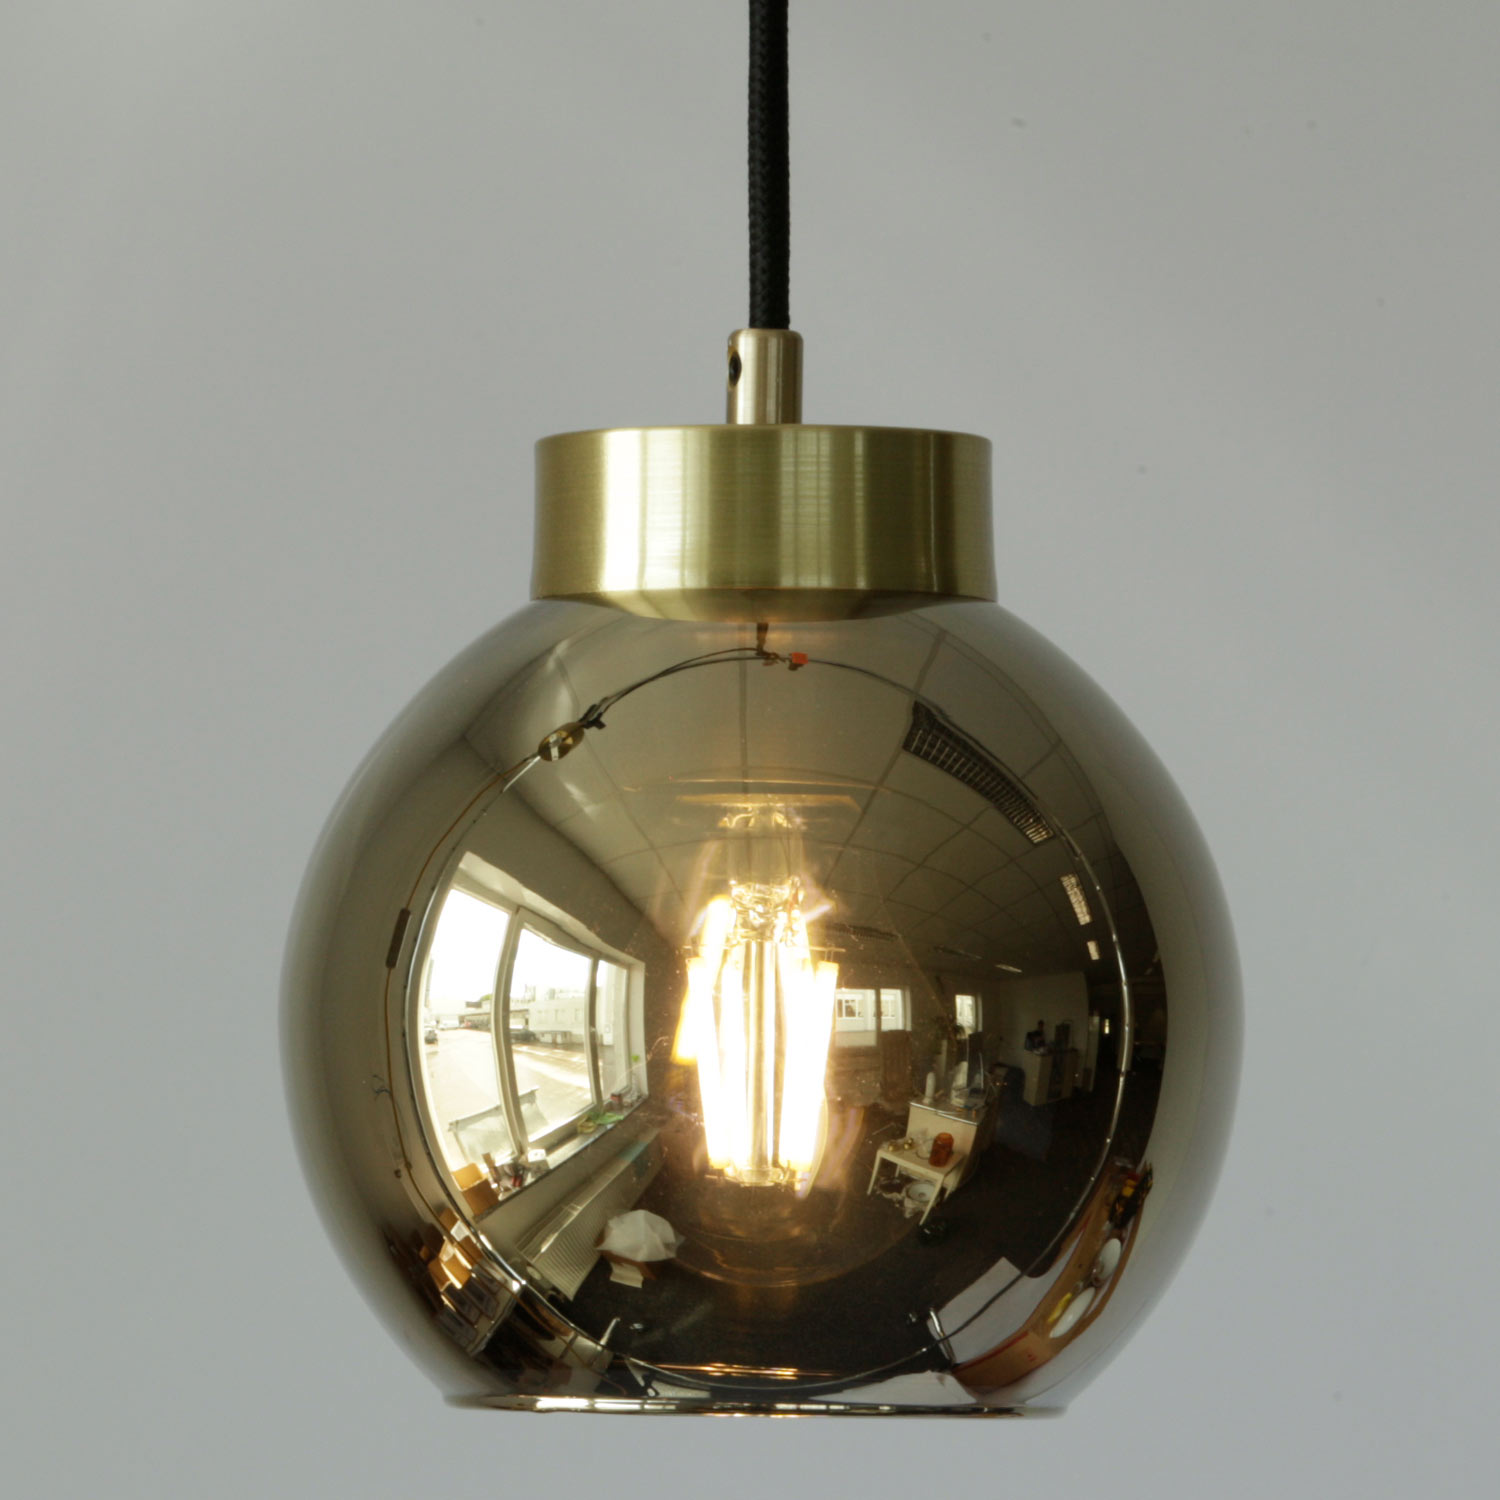 Kugel-Pendelleuchte aus Spiegel-Glas (gold/silbern/kupfern) Ø 15–30 cm: Die halbtransparente Spiegel-Beschichtung zeigt in eingeschaltetem Zustand das Leuchtmittel